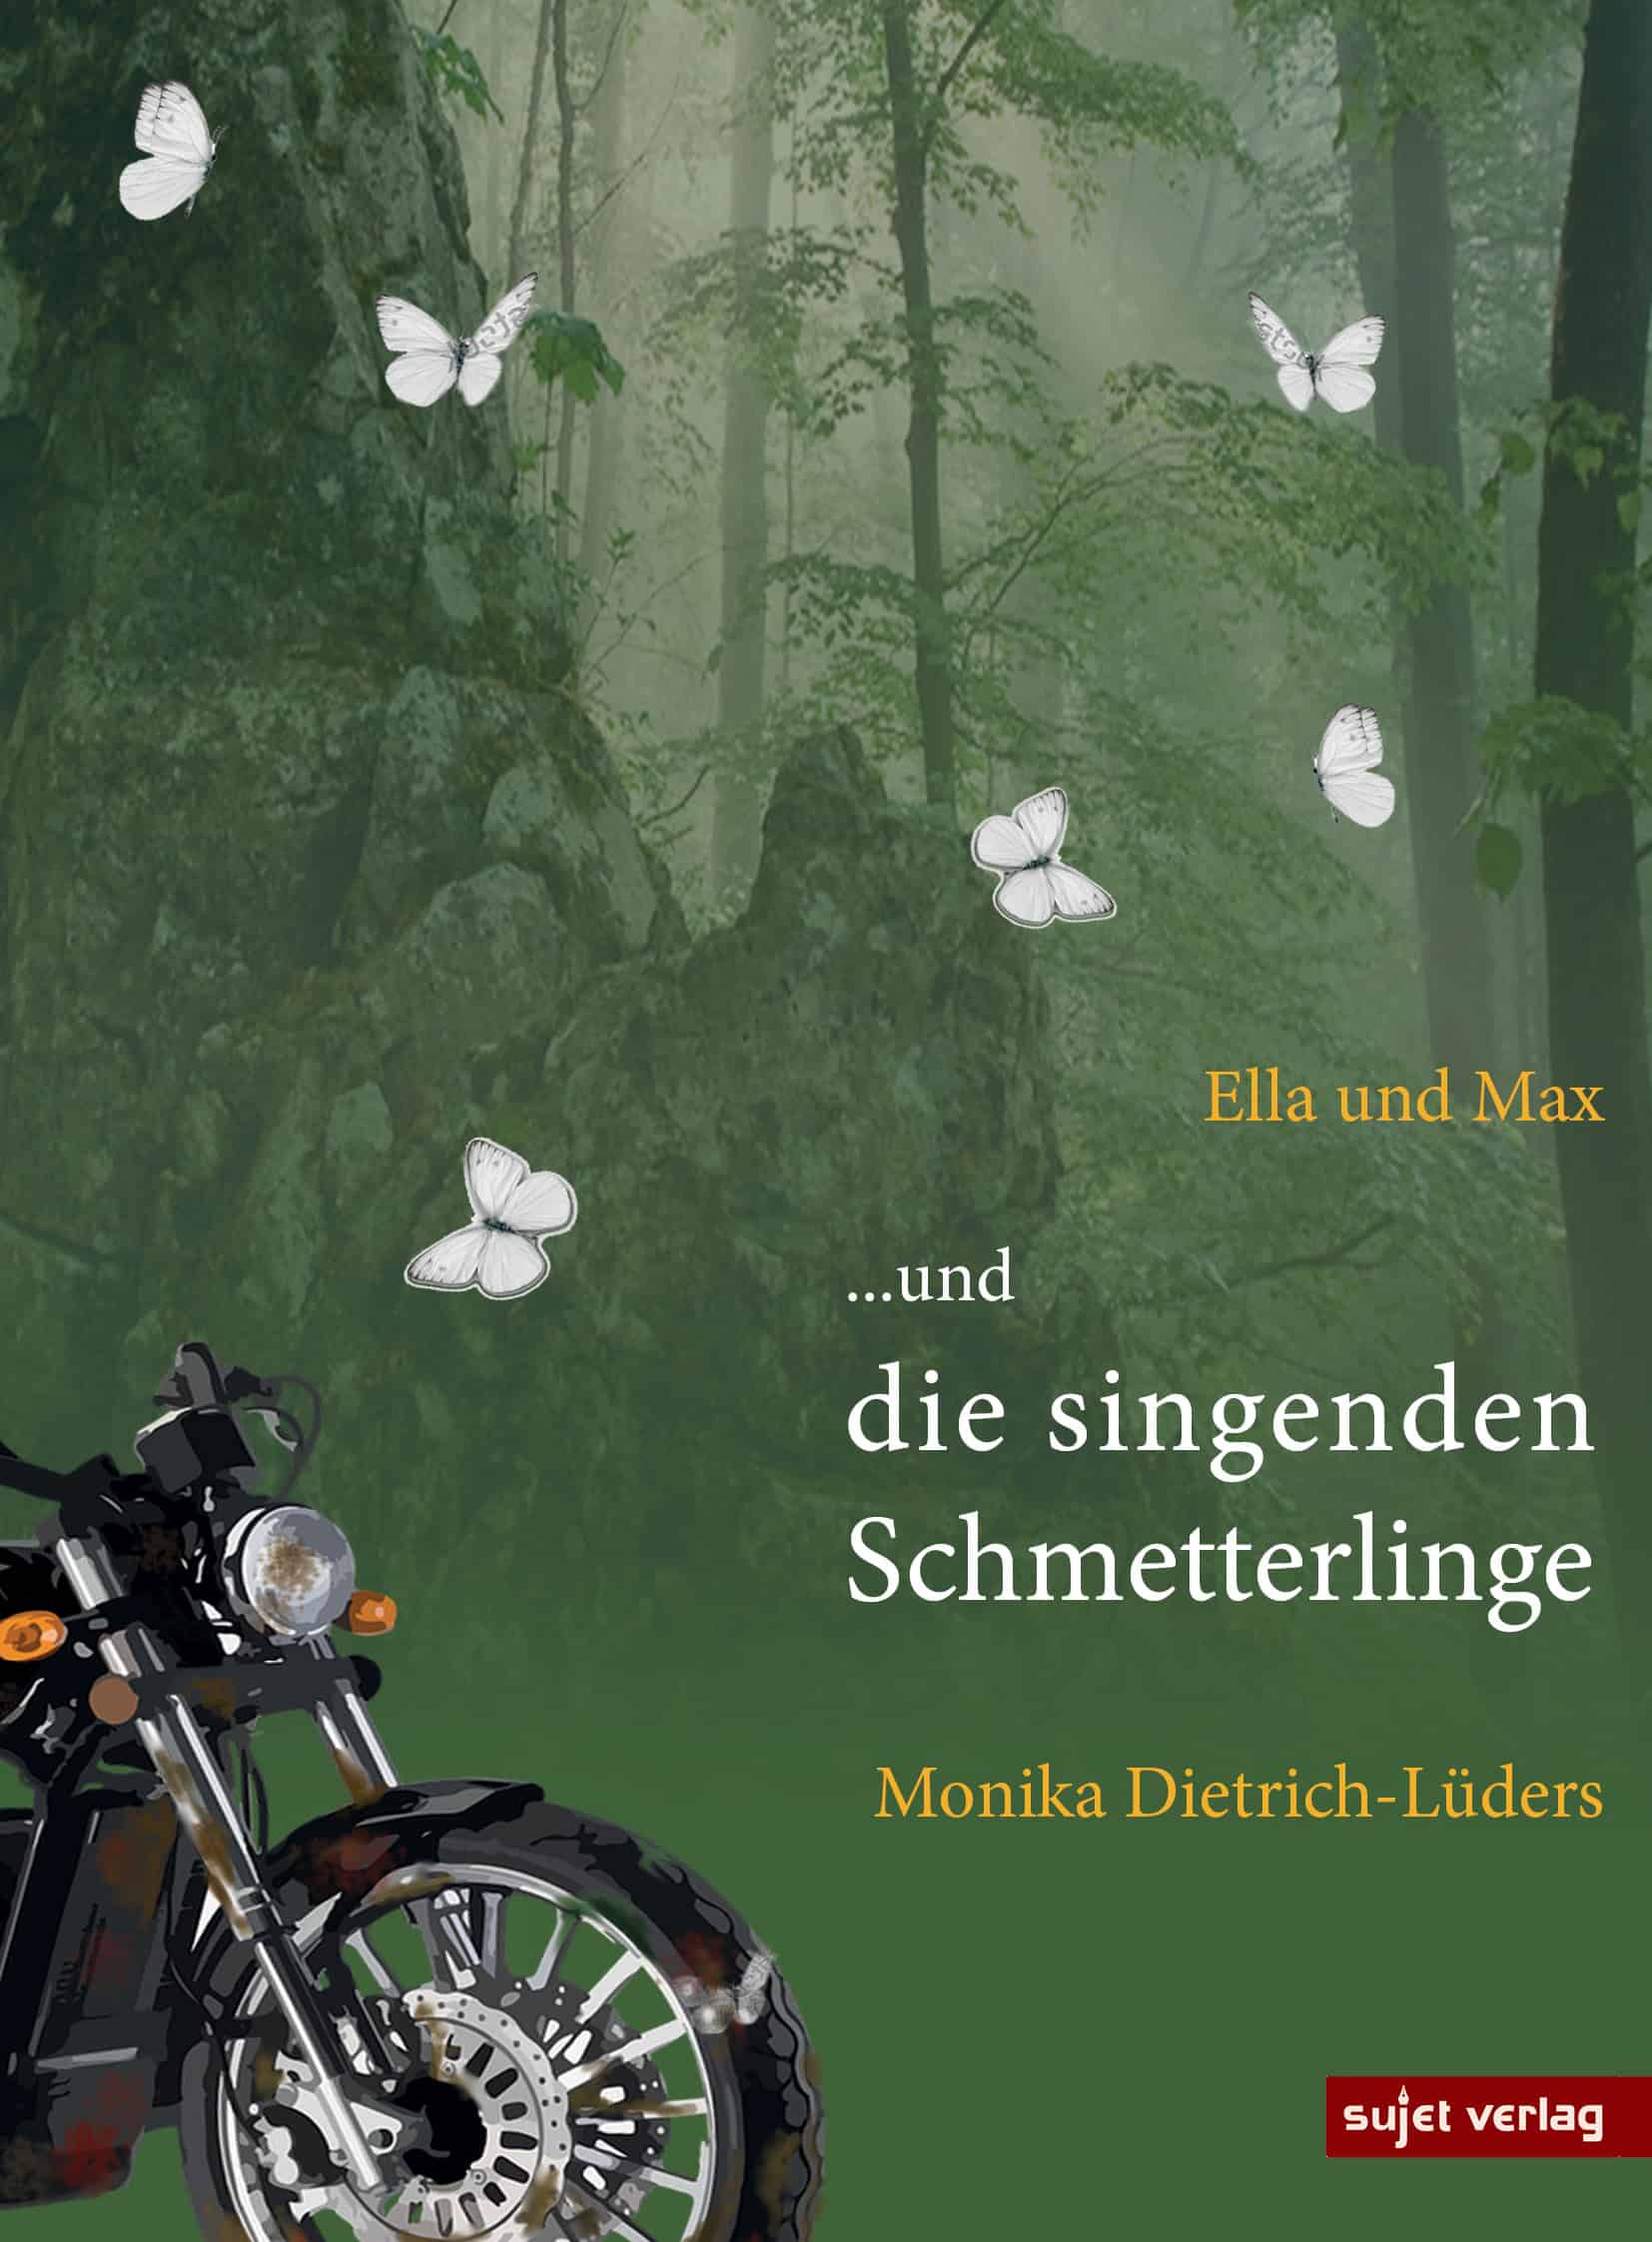 Dietrich-Lüders, Monika: Ella und Max …und die singenden Schmetterlinge